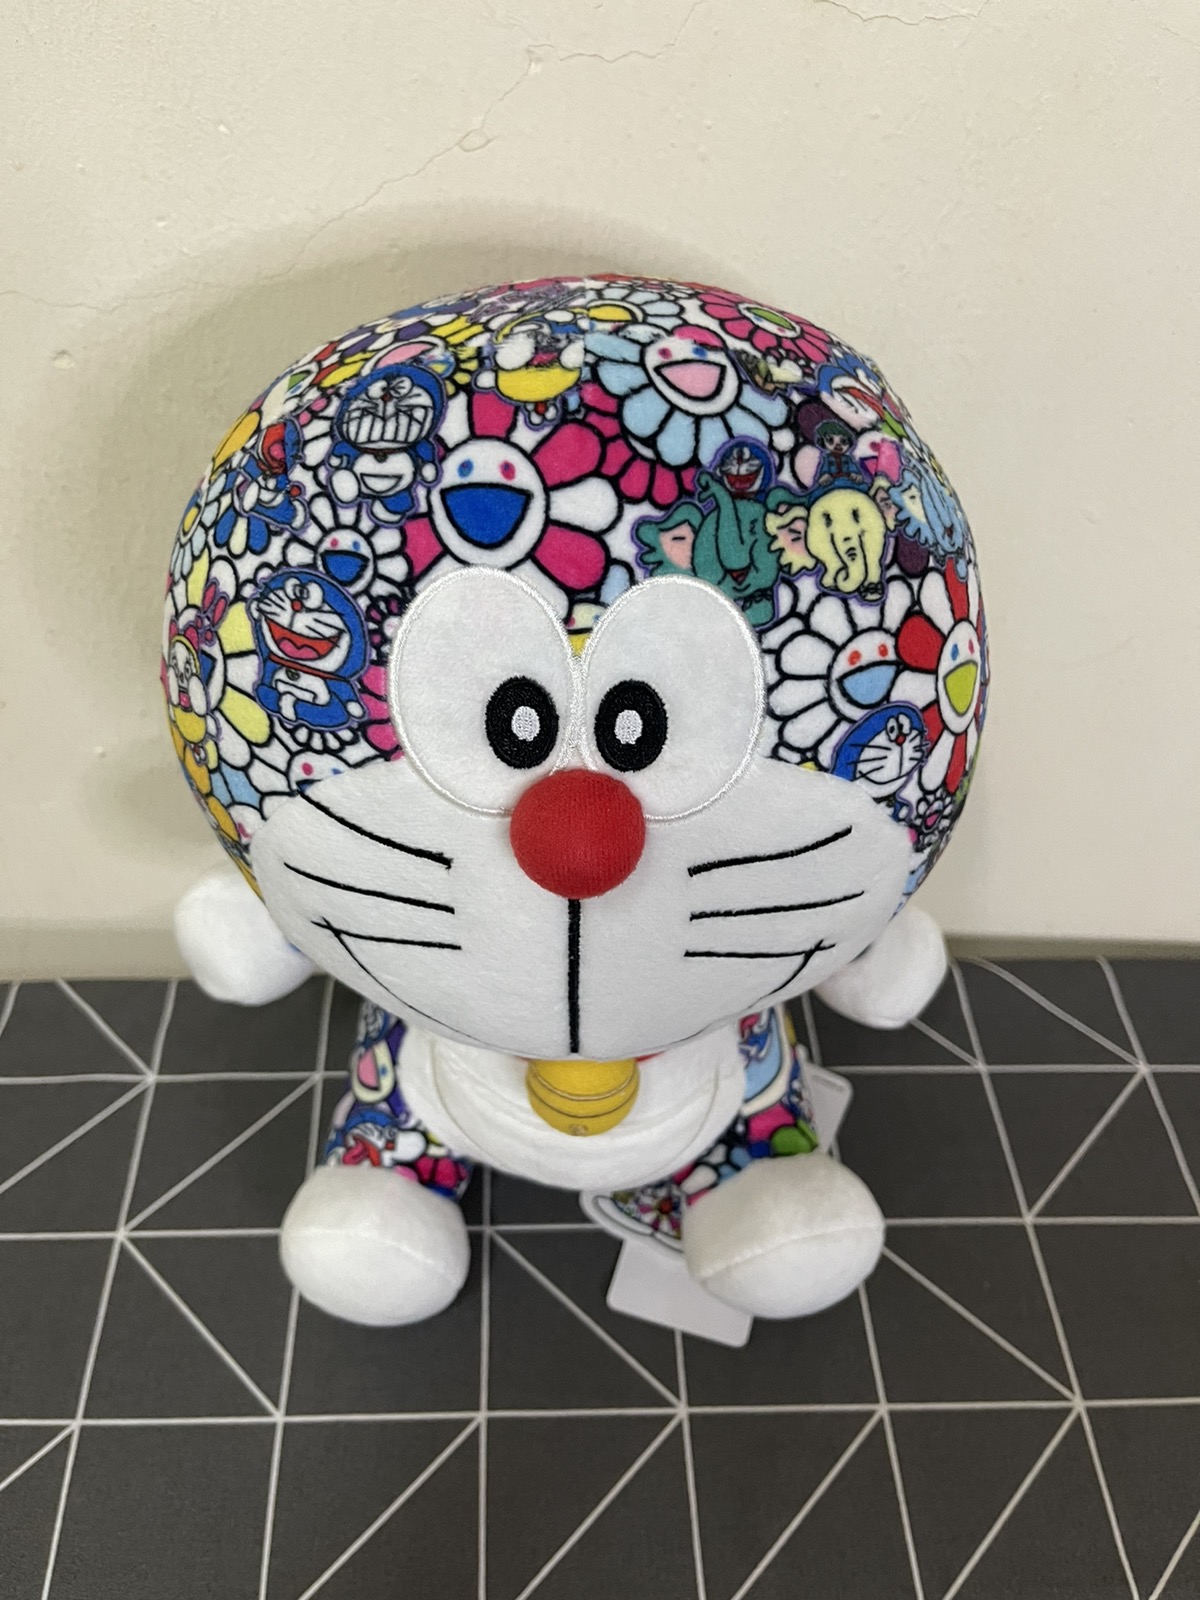 Uniqlo - New Takashi Murakami Doraemon Toys Limited Edition - 3